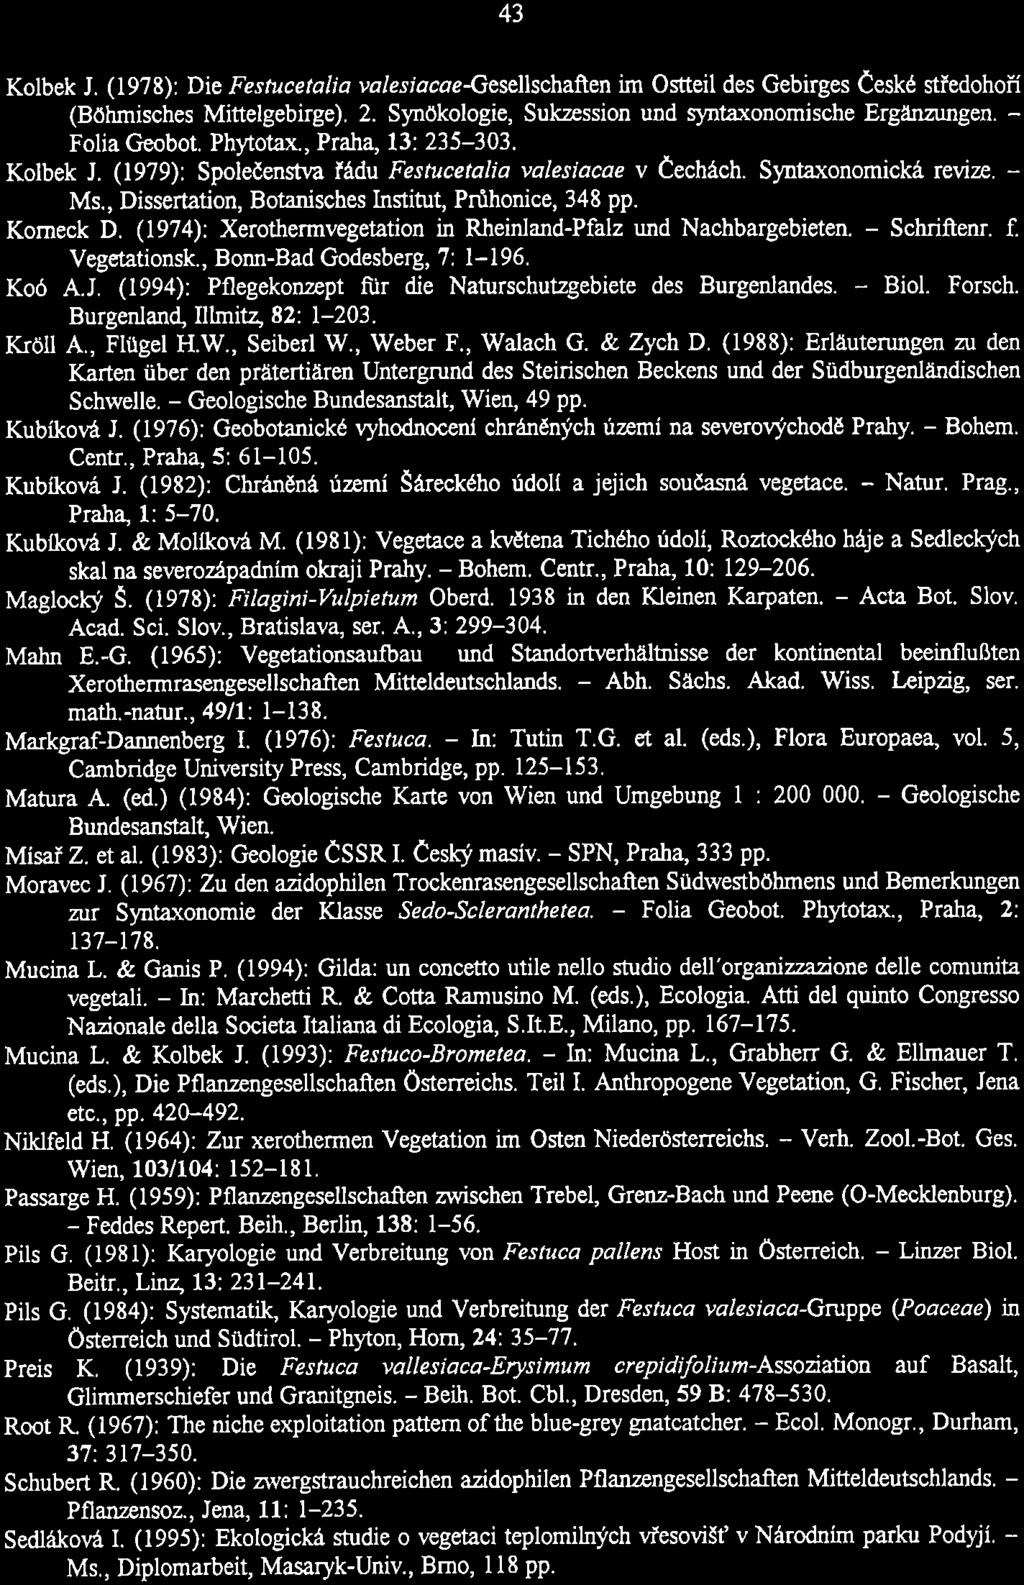 Kolbek J. (1978): Die Festucetalia valesiacaegesellschaften im Ostteil des Gebirges Ceskt stfedohon (Böhmisches Mittelgebirge). 2. Synökologie, Sukzession und syntaxonornische Erg-gen. - Folia Geobot.